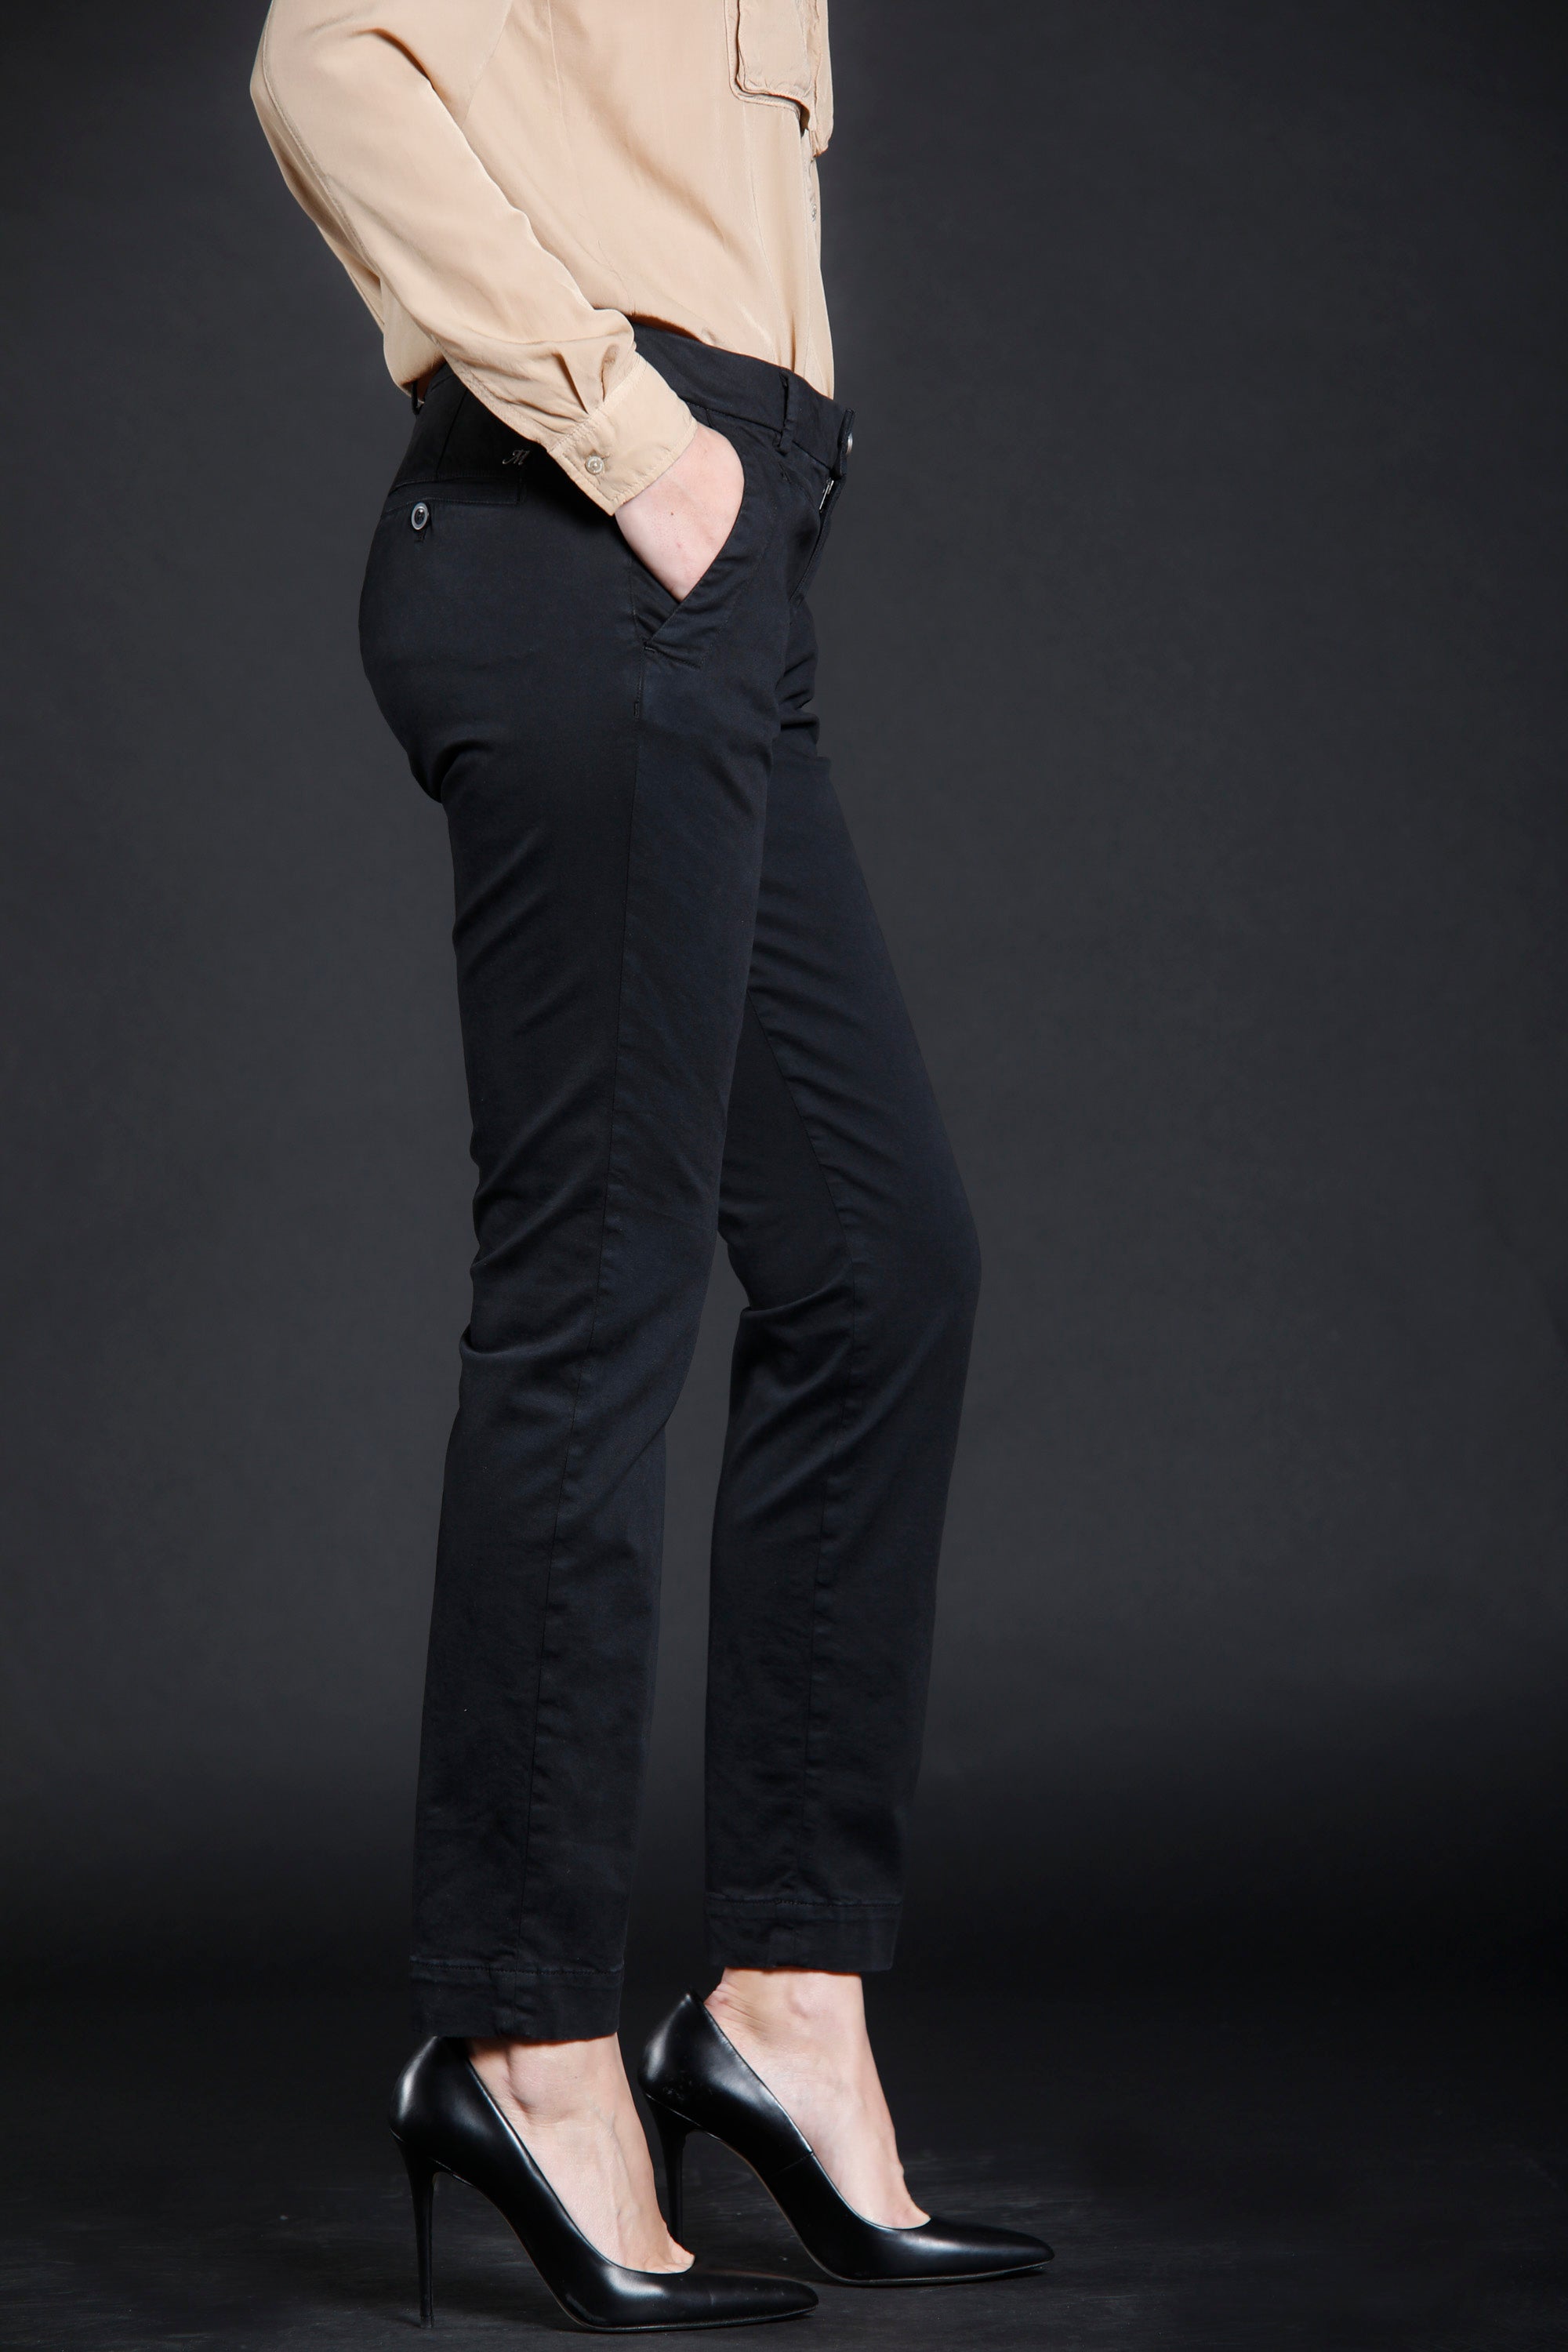 Image 2 de pantalon chino femme en gabardine couleur noir modèle Jaqueline Archivio de Mason's